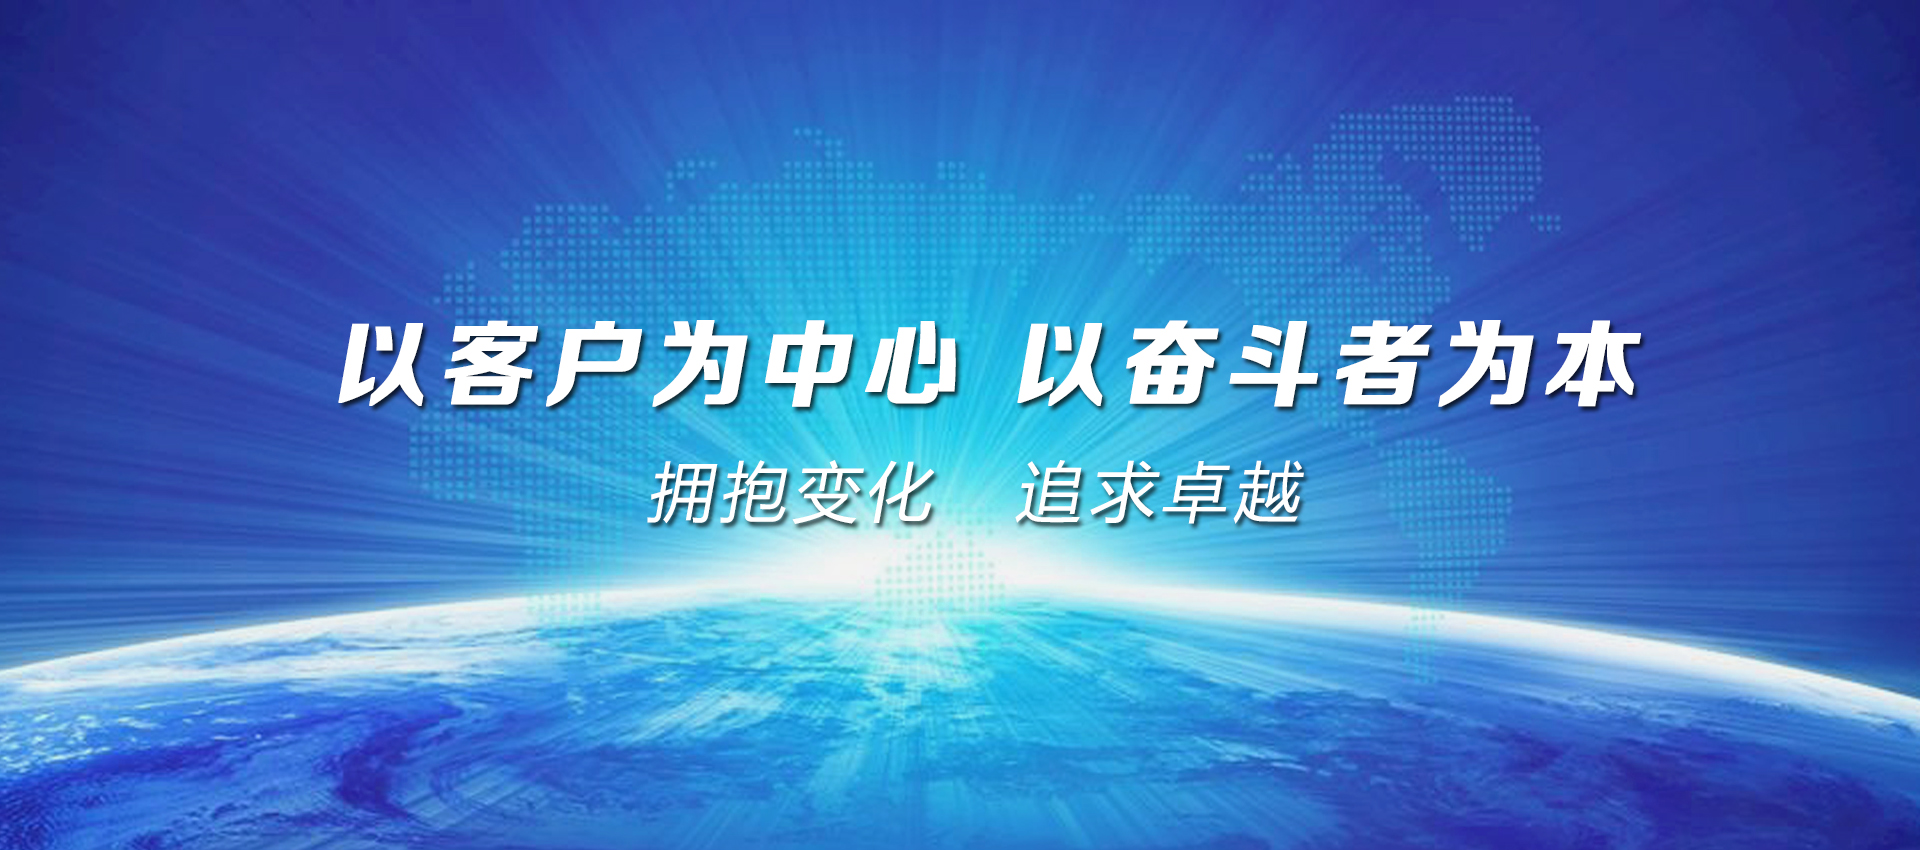 江苏三希科技股份有限公司